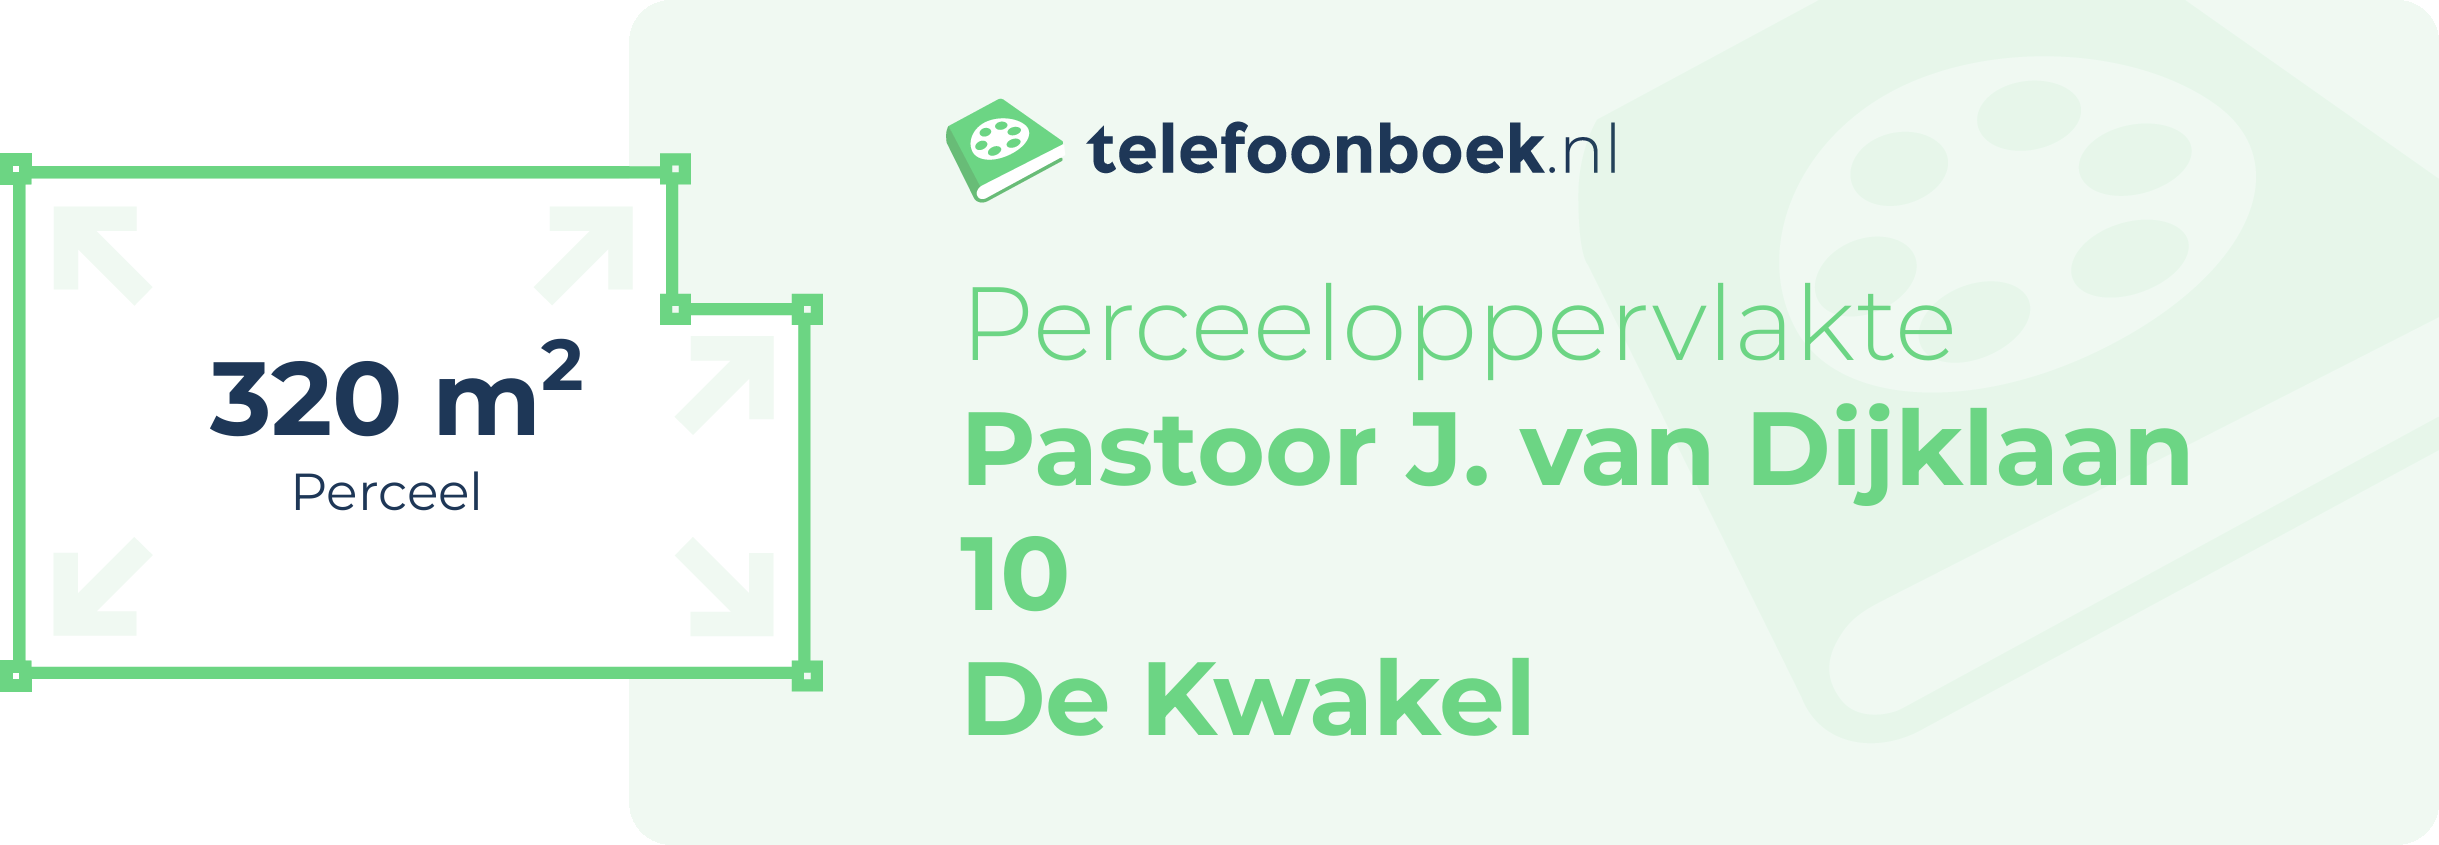 Perceeloppervlakte Pastoor J. Van Dijklaan 10 De Kwakel